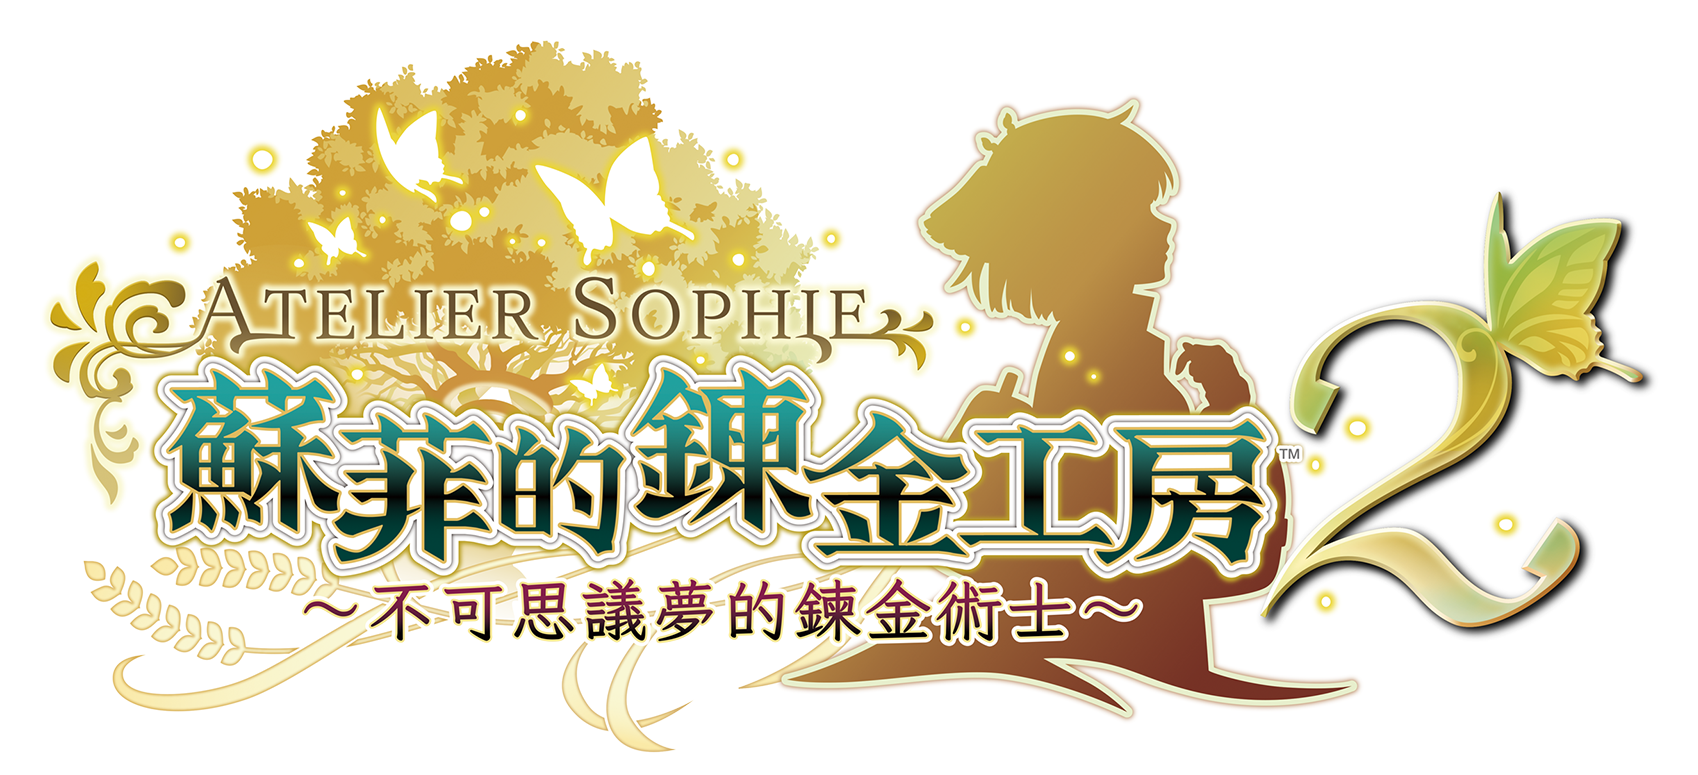 Sophie2 logo.png